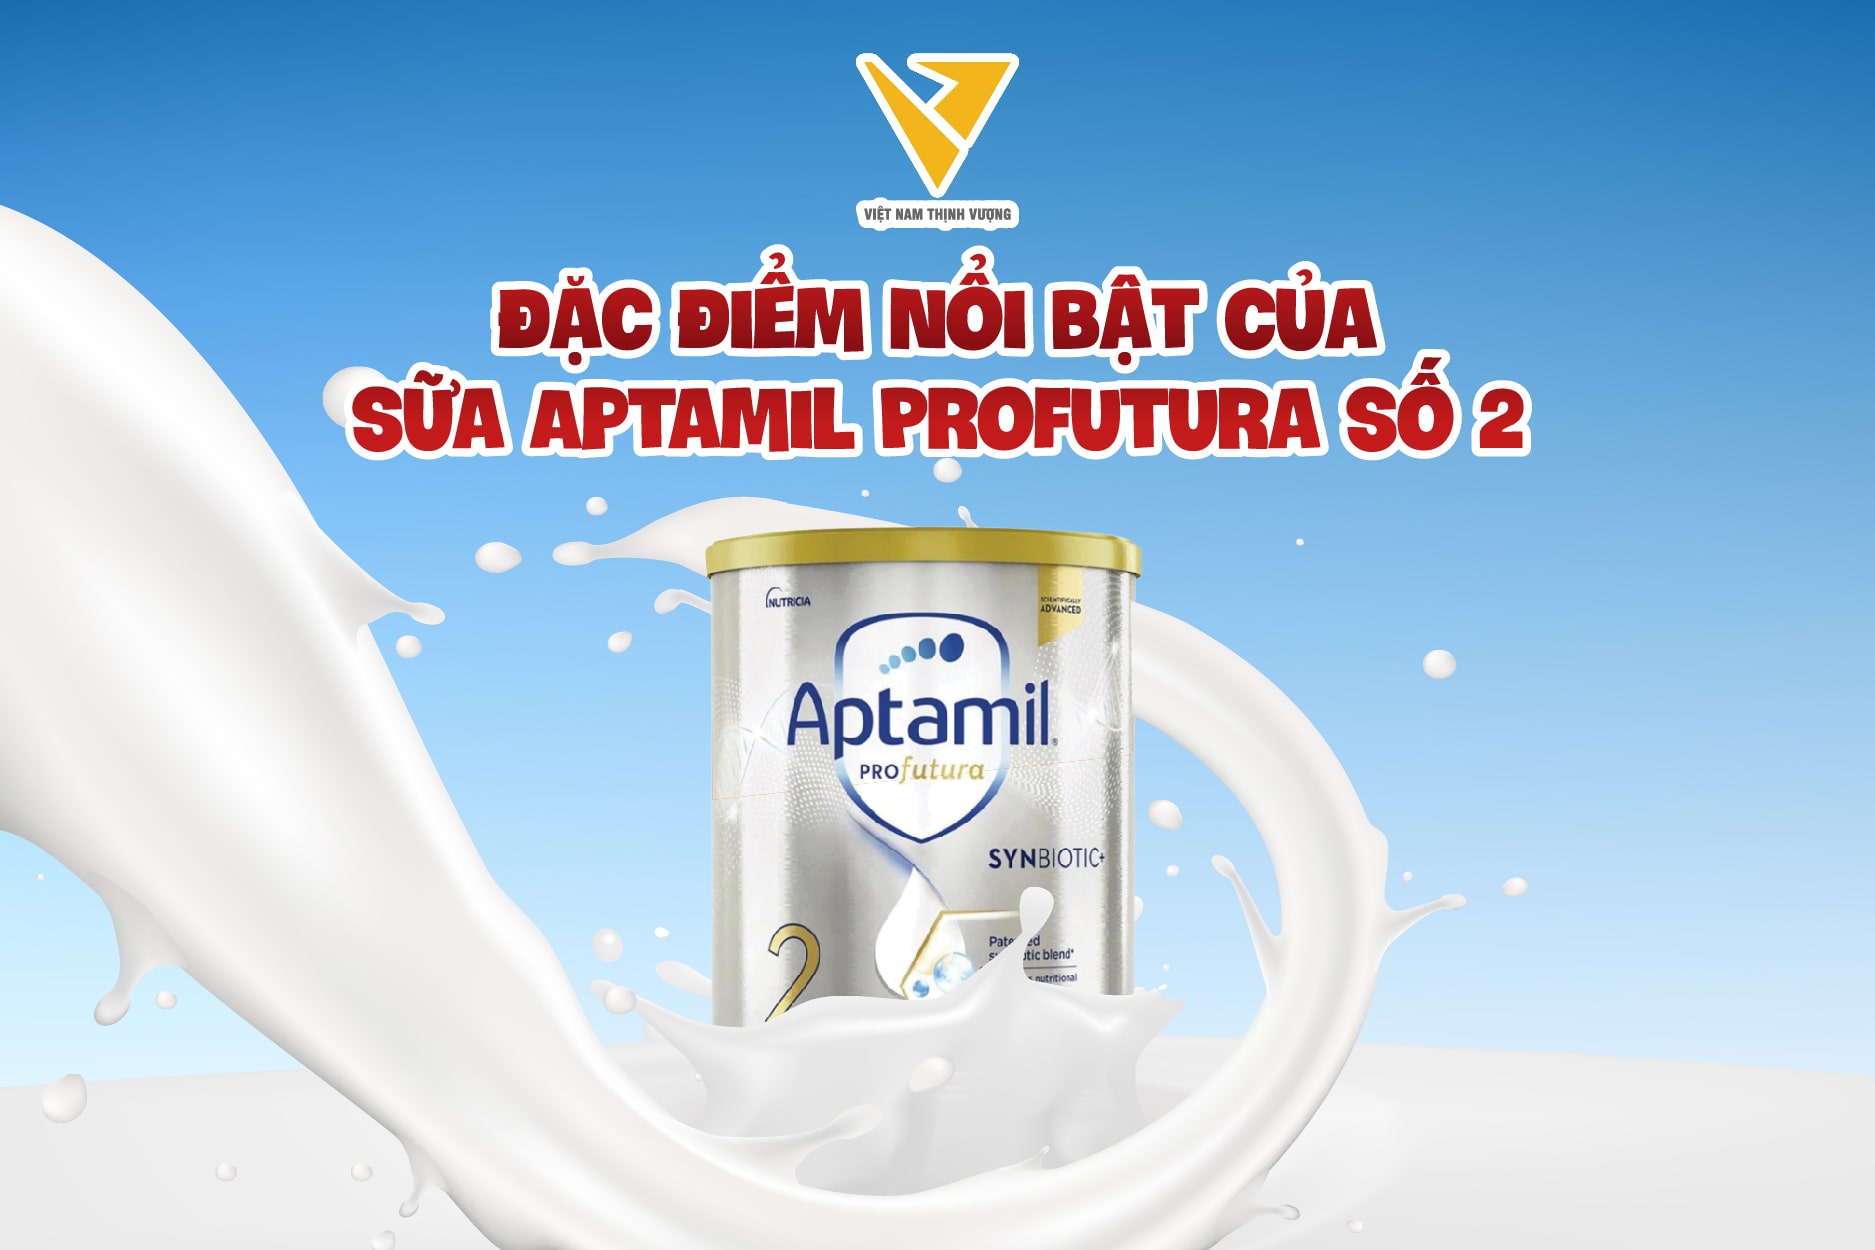 Aptamil Profutura dòng sữa công thức cao cấp nhất hiện nay, đem lại những công dụng vượt trội cho trẻ